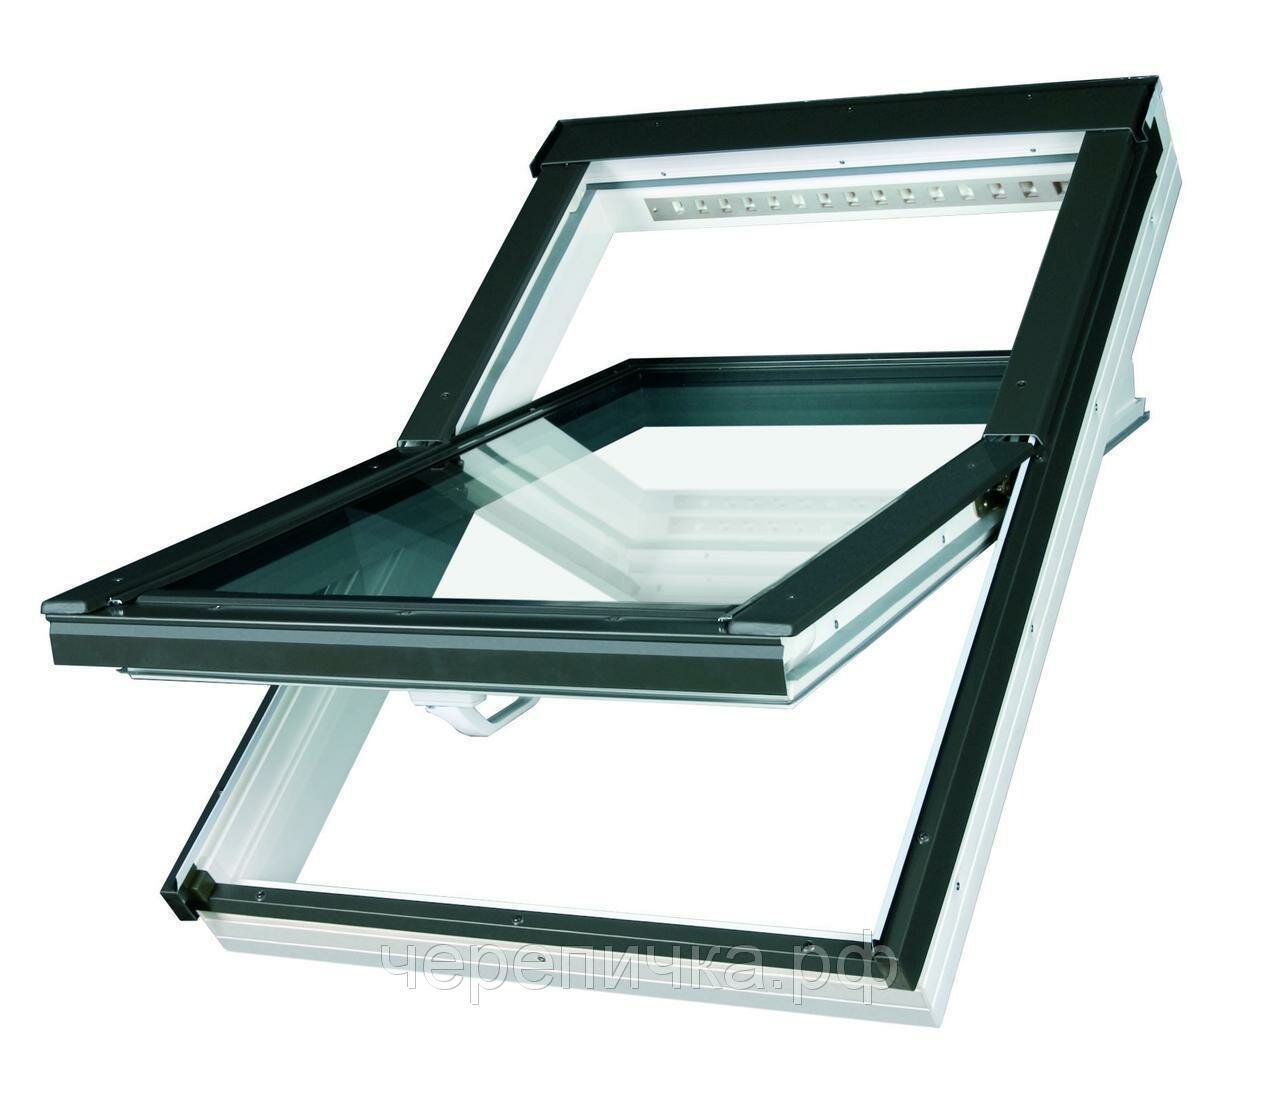 Мансардное окно Fakro PTP U4 PROFI ПВХ двухкамерным стеклопакетом (66*140)